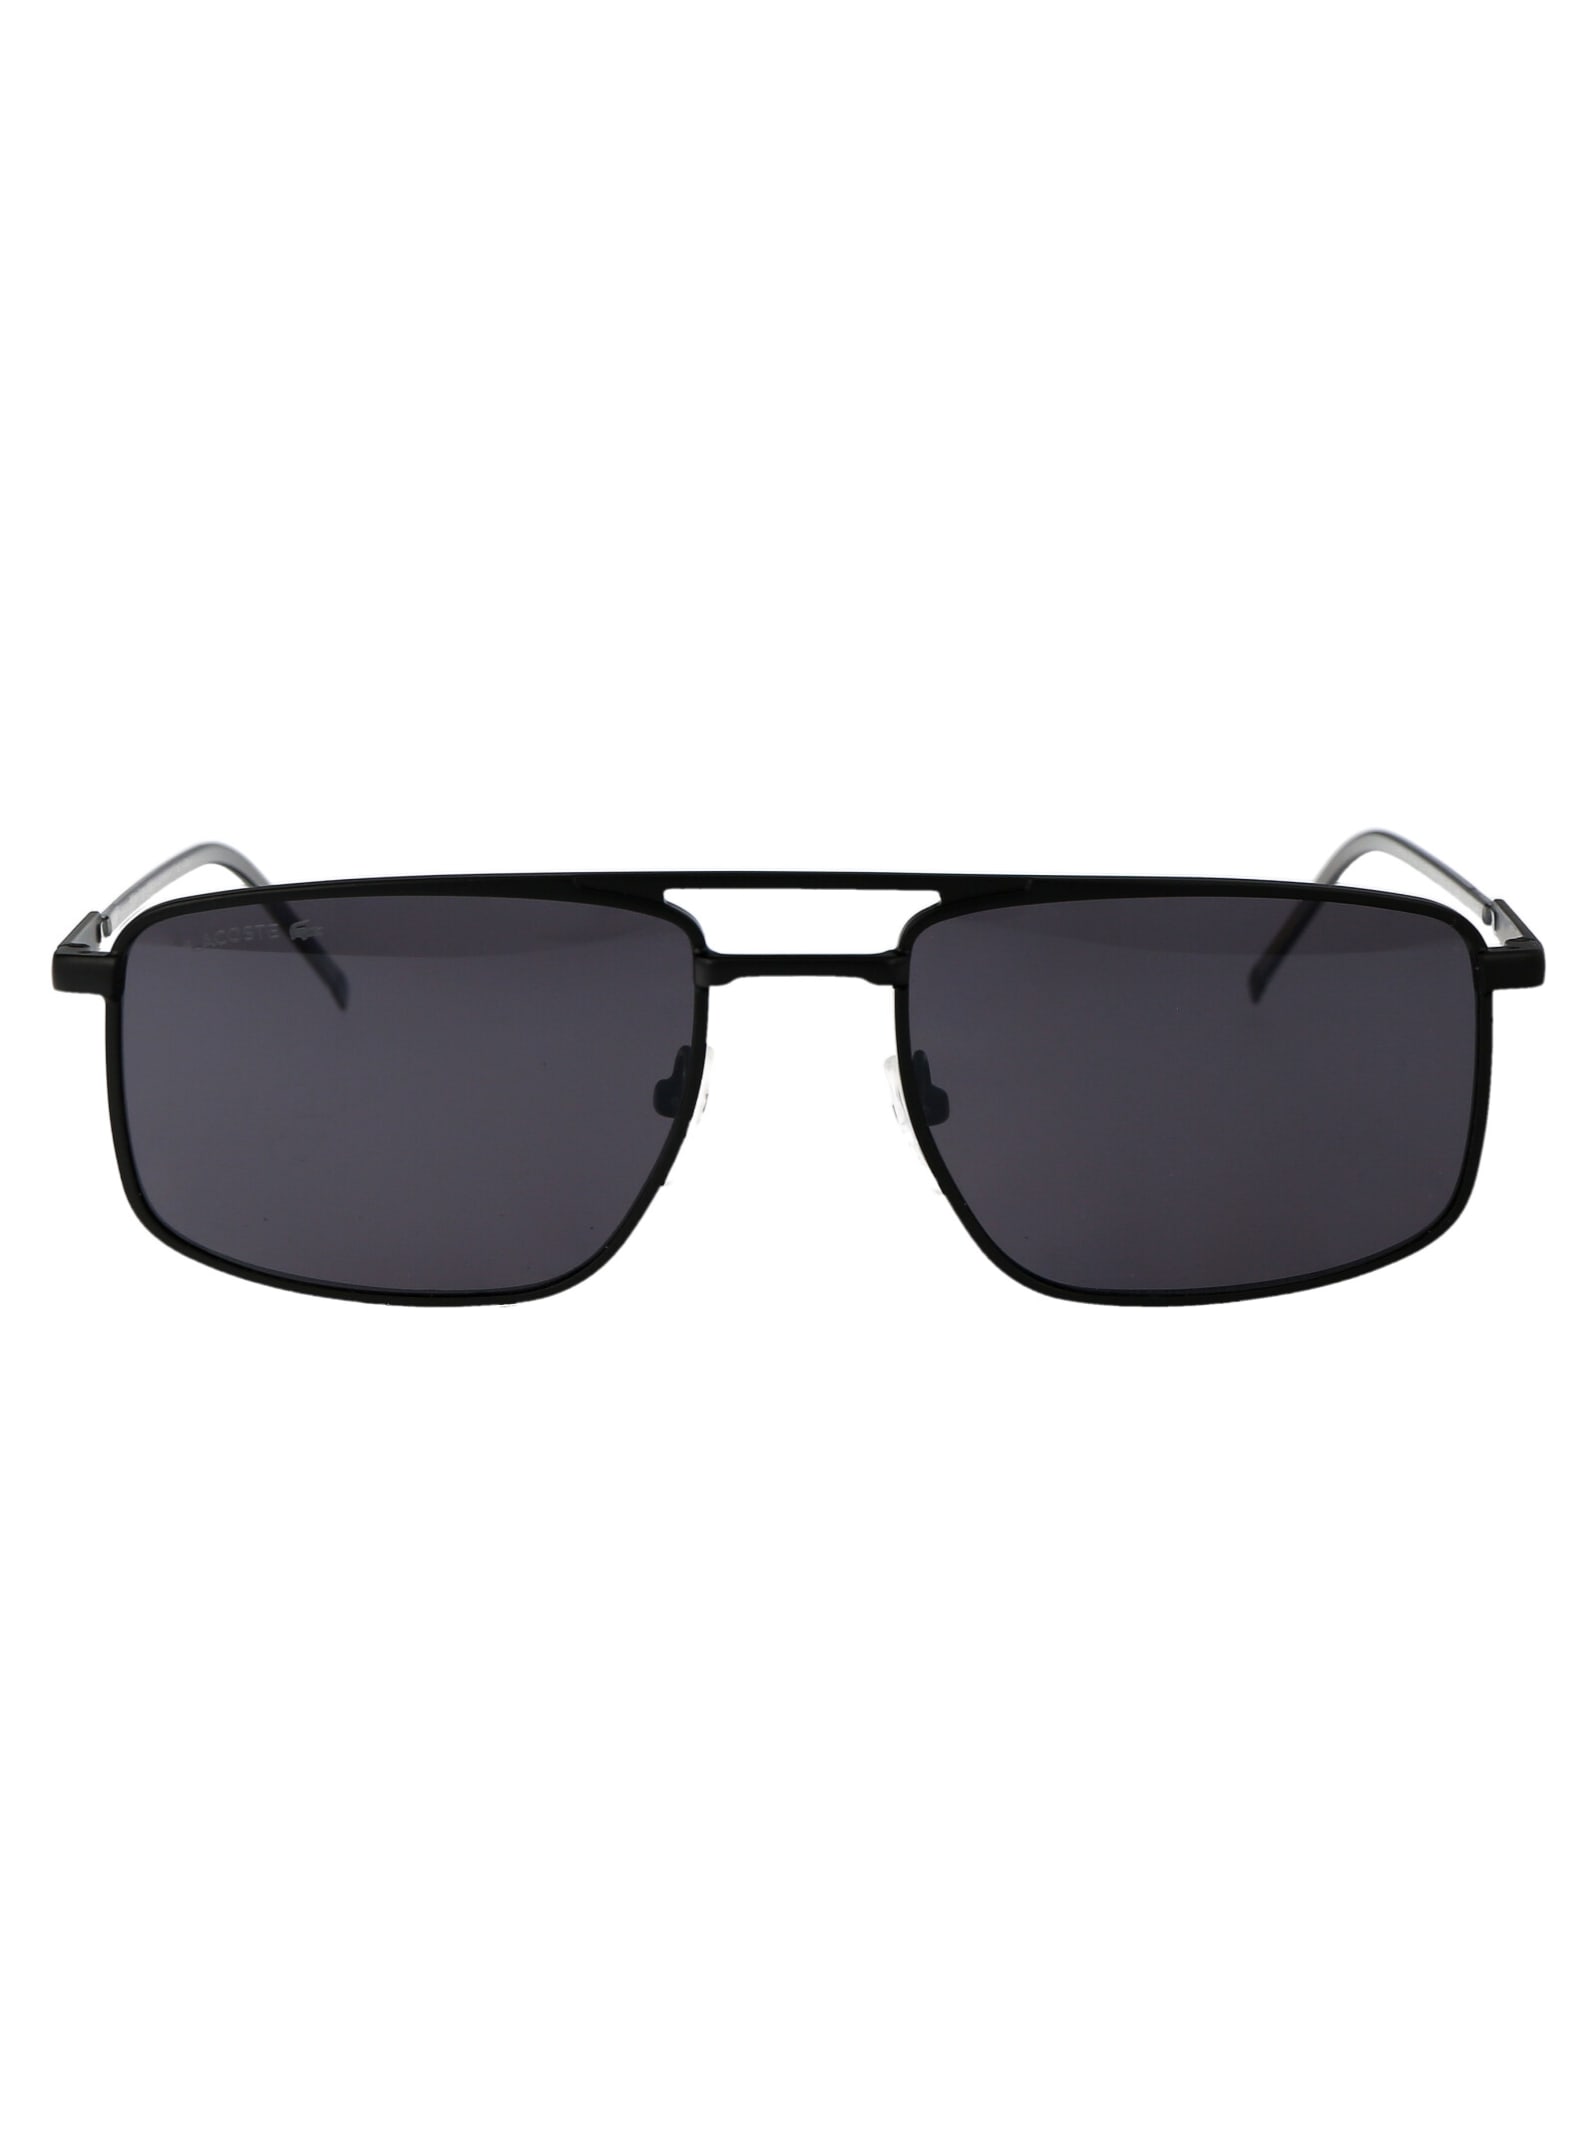 L255s Sunglasses